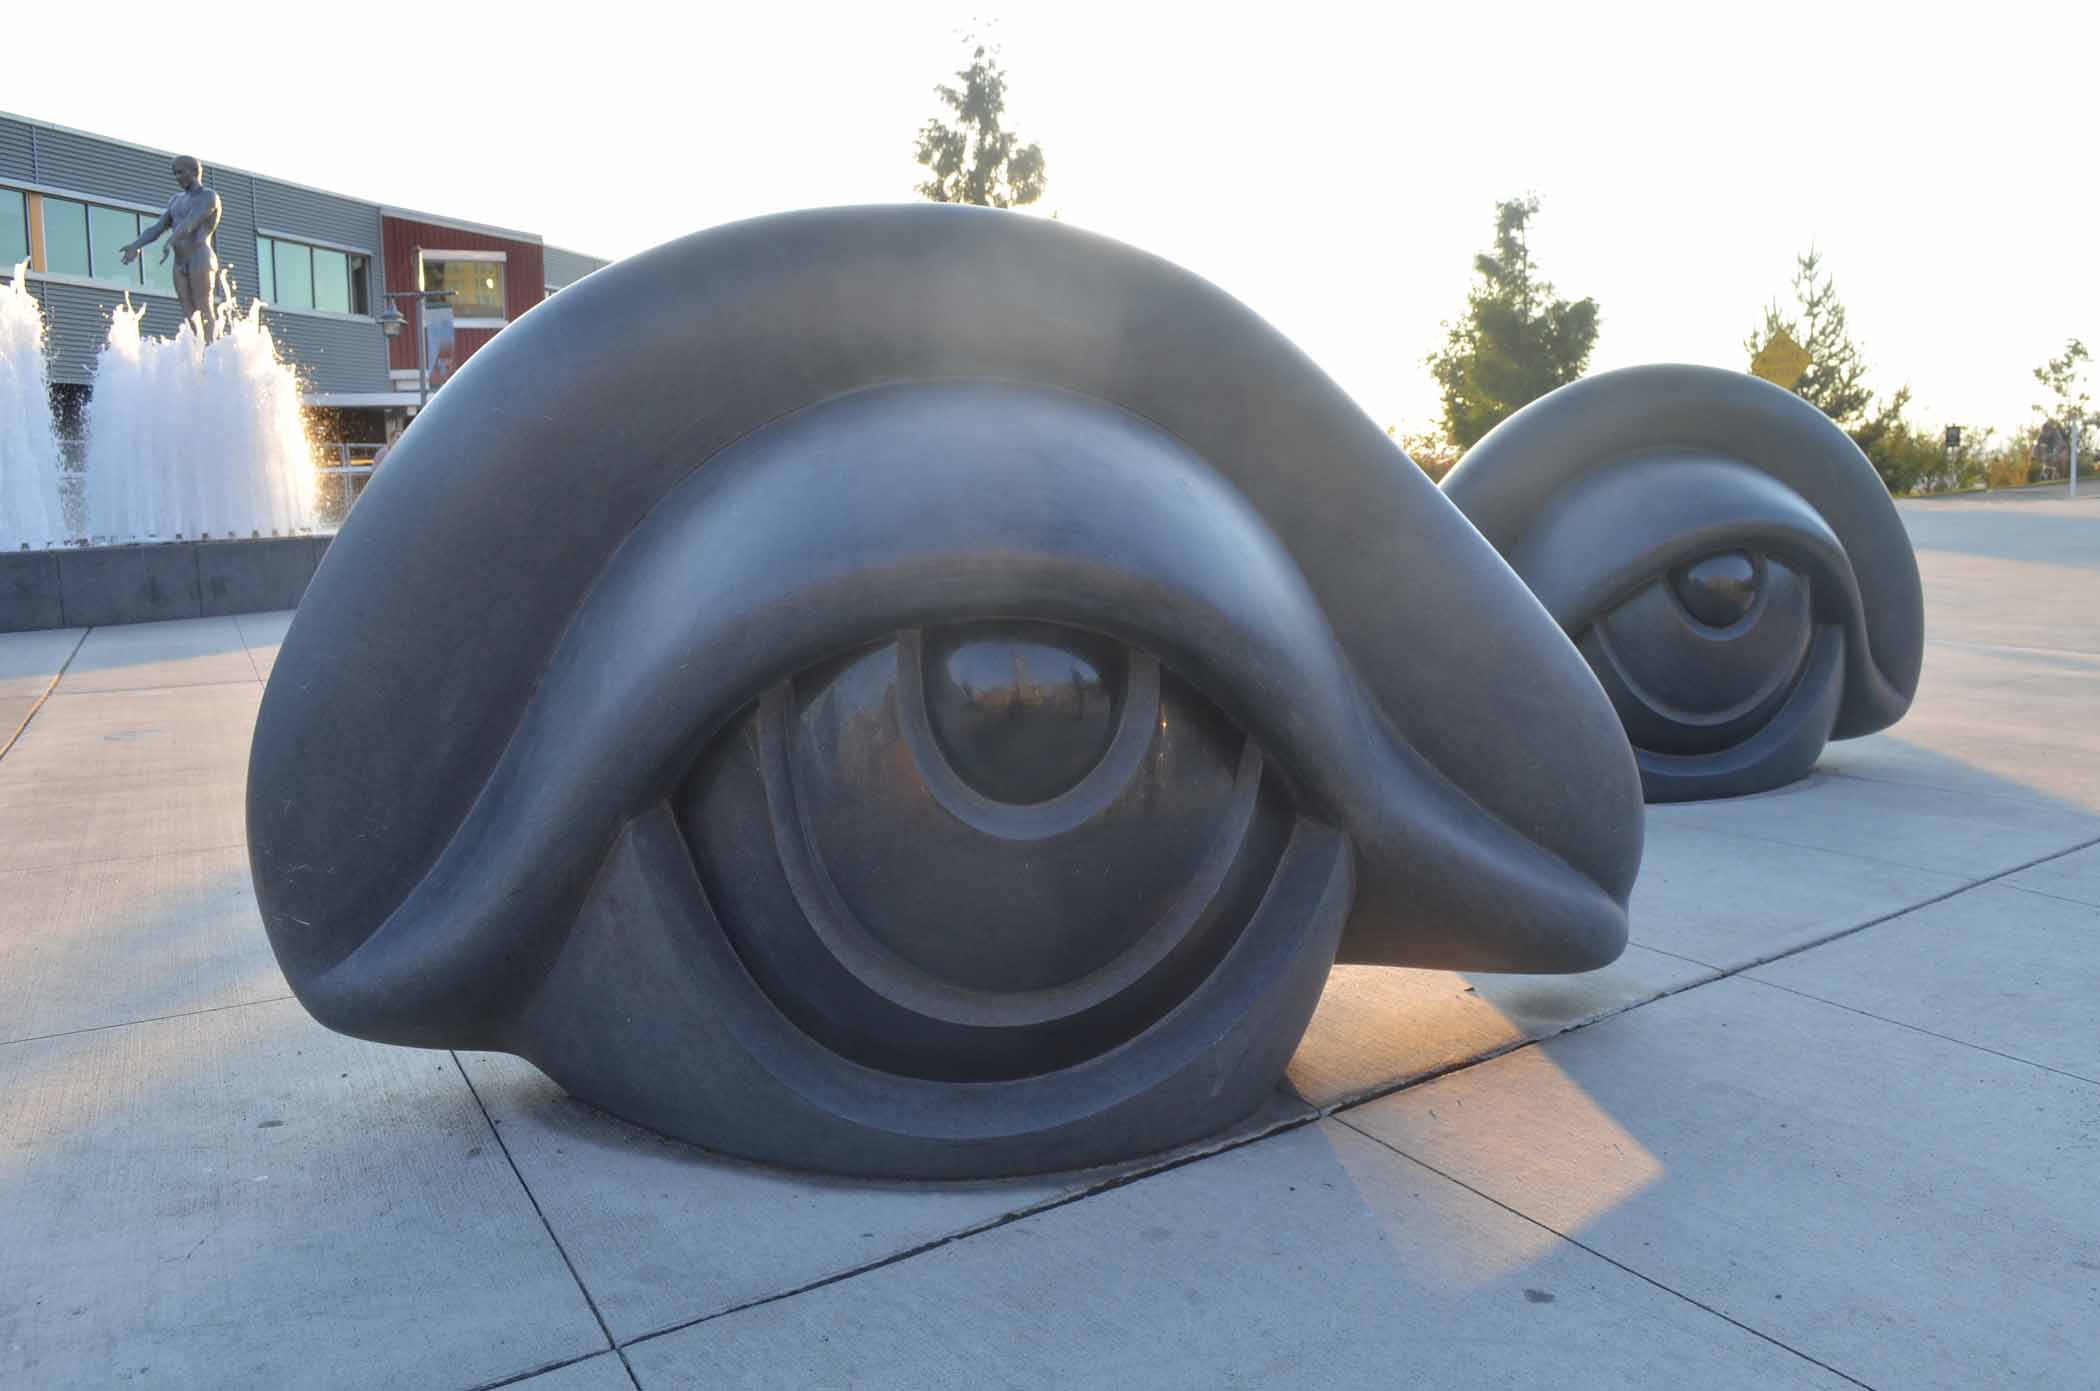 Seattle Sculpture Park